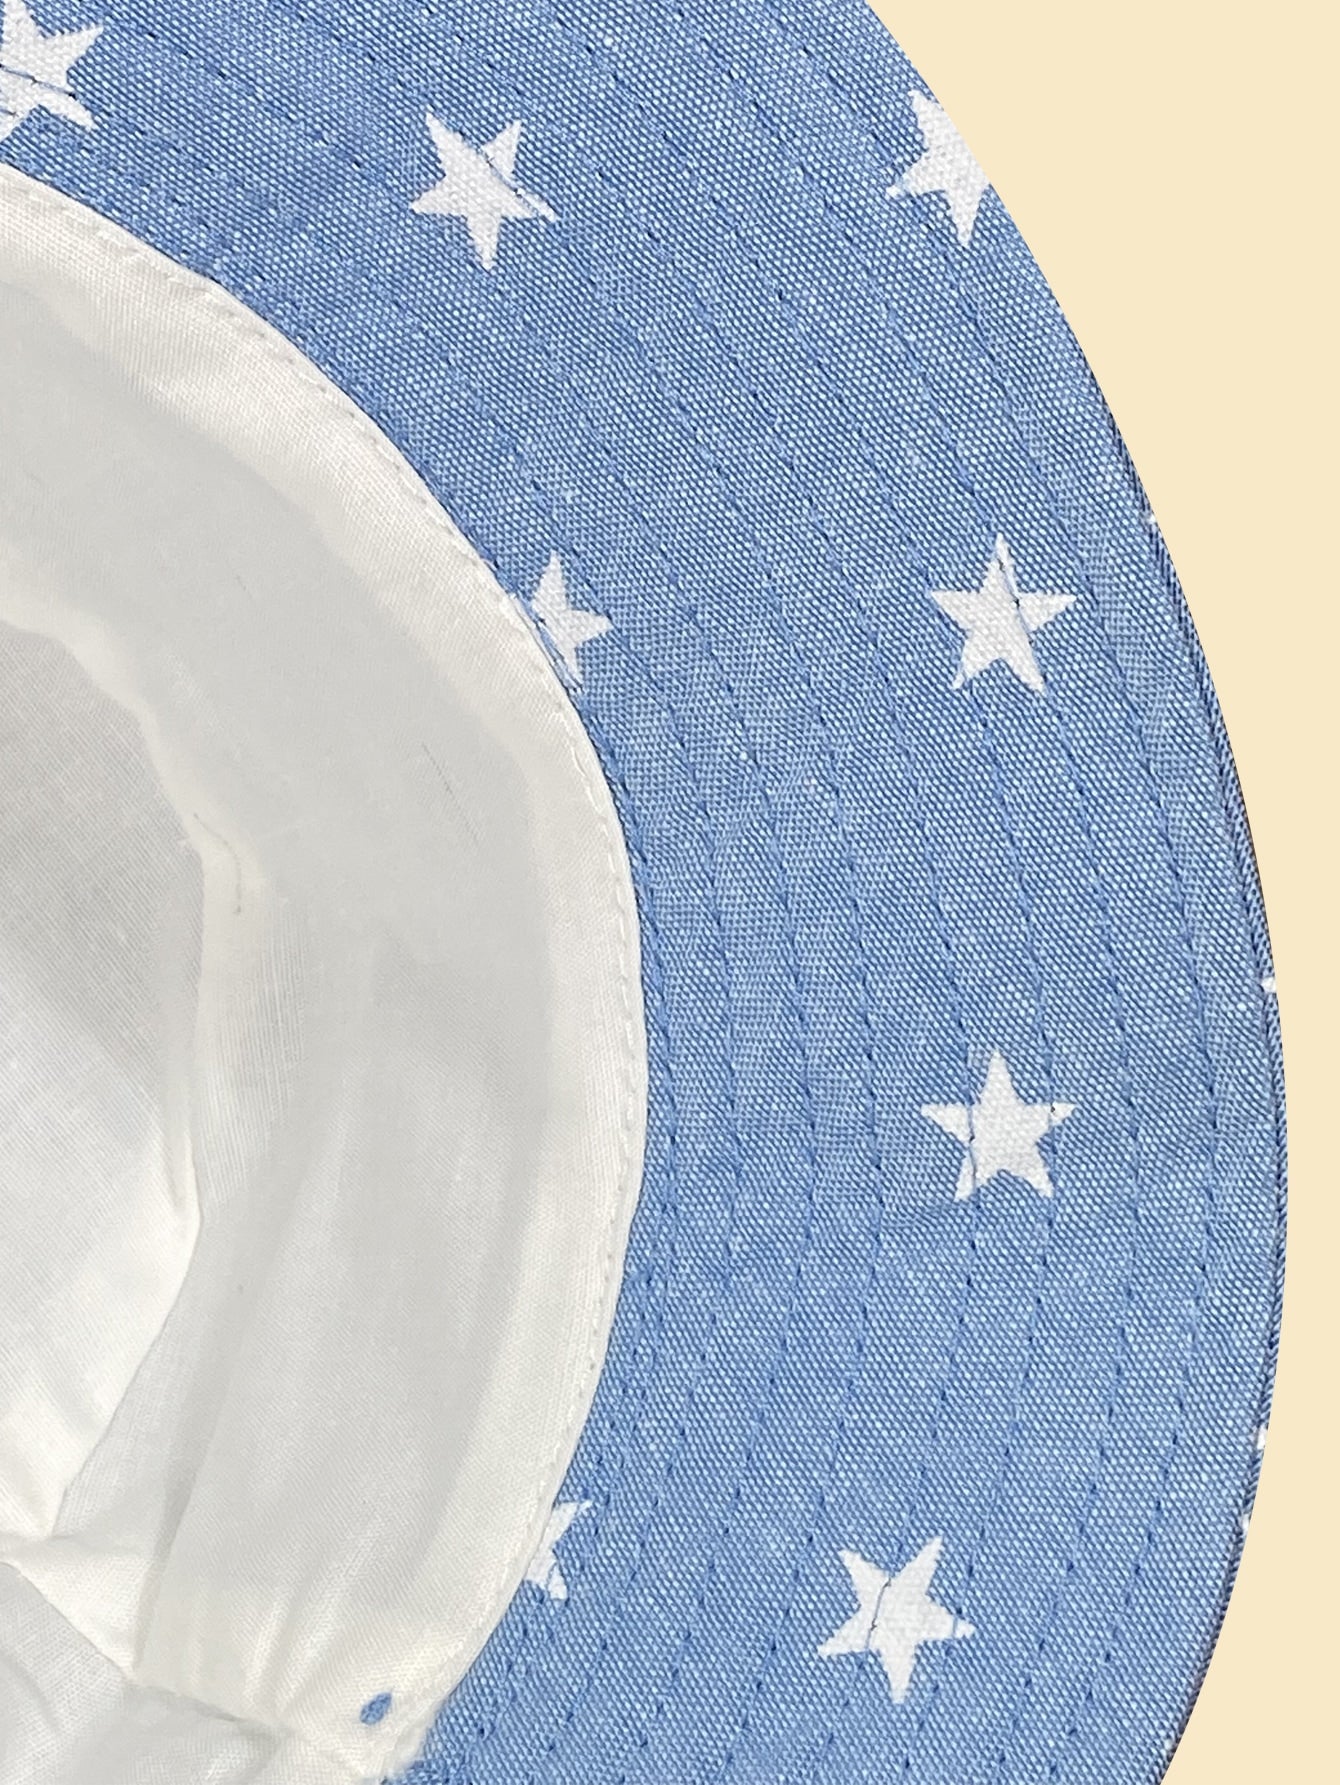 Mercurio Celeste - 50cm - Gorra Bebe Niño Bucket Hat